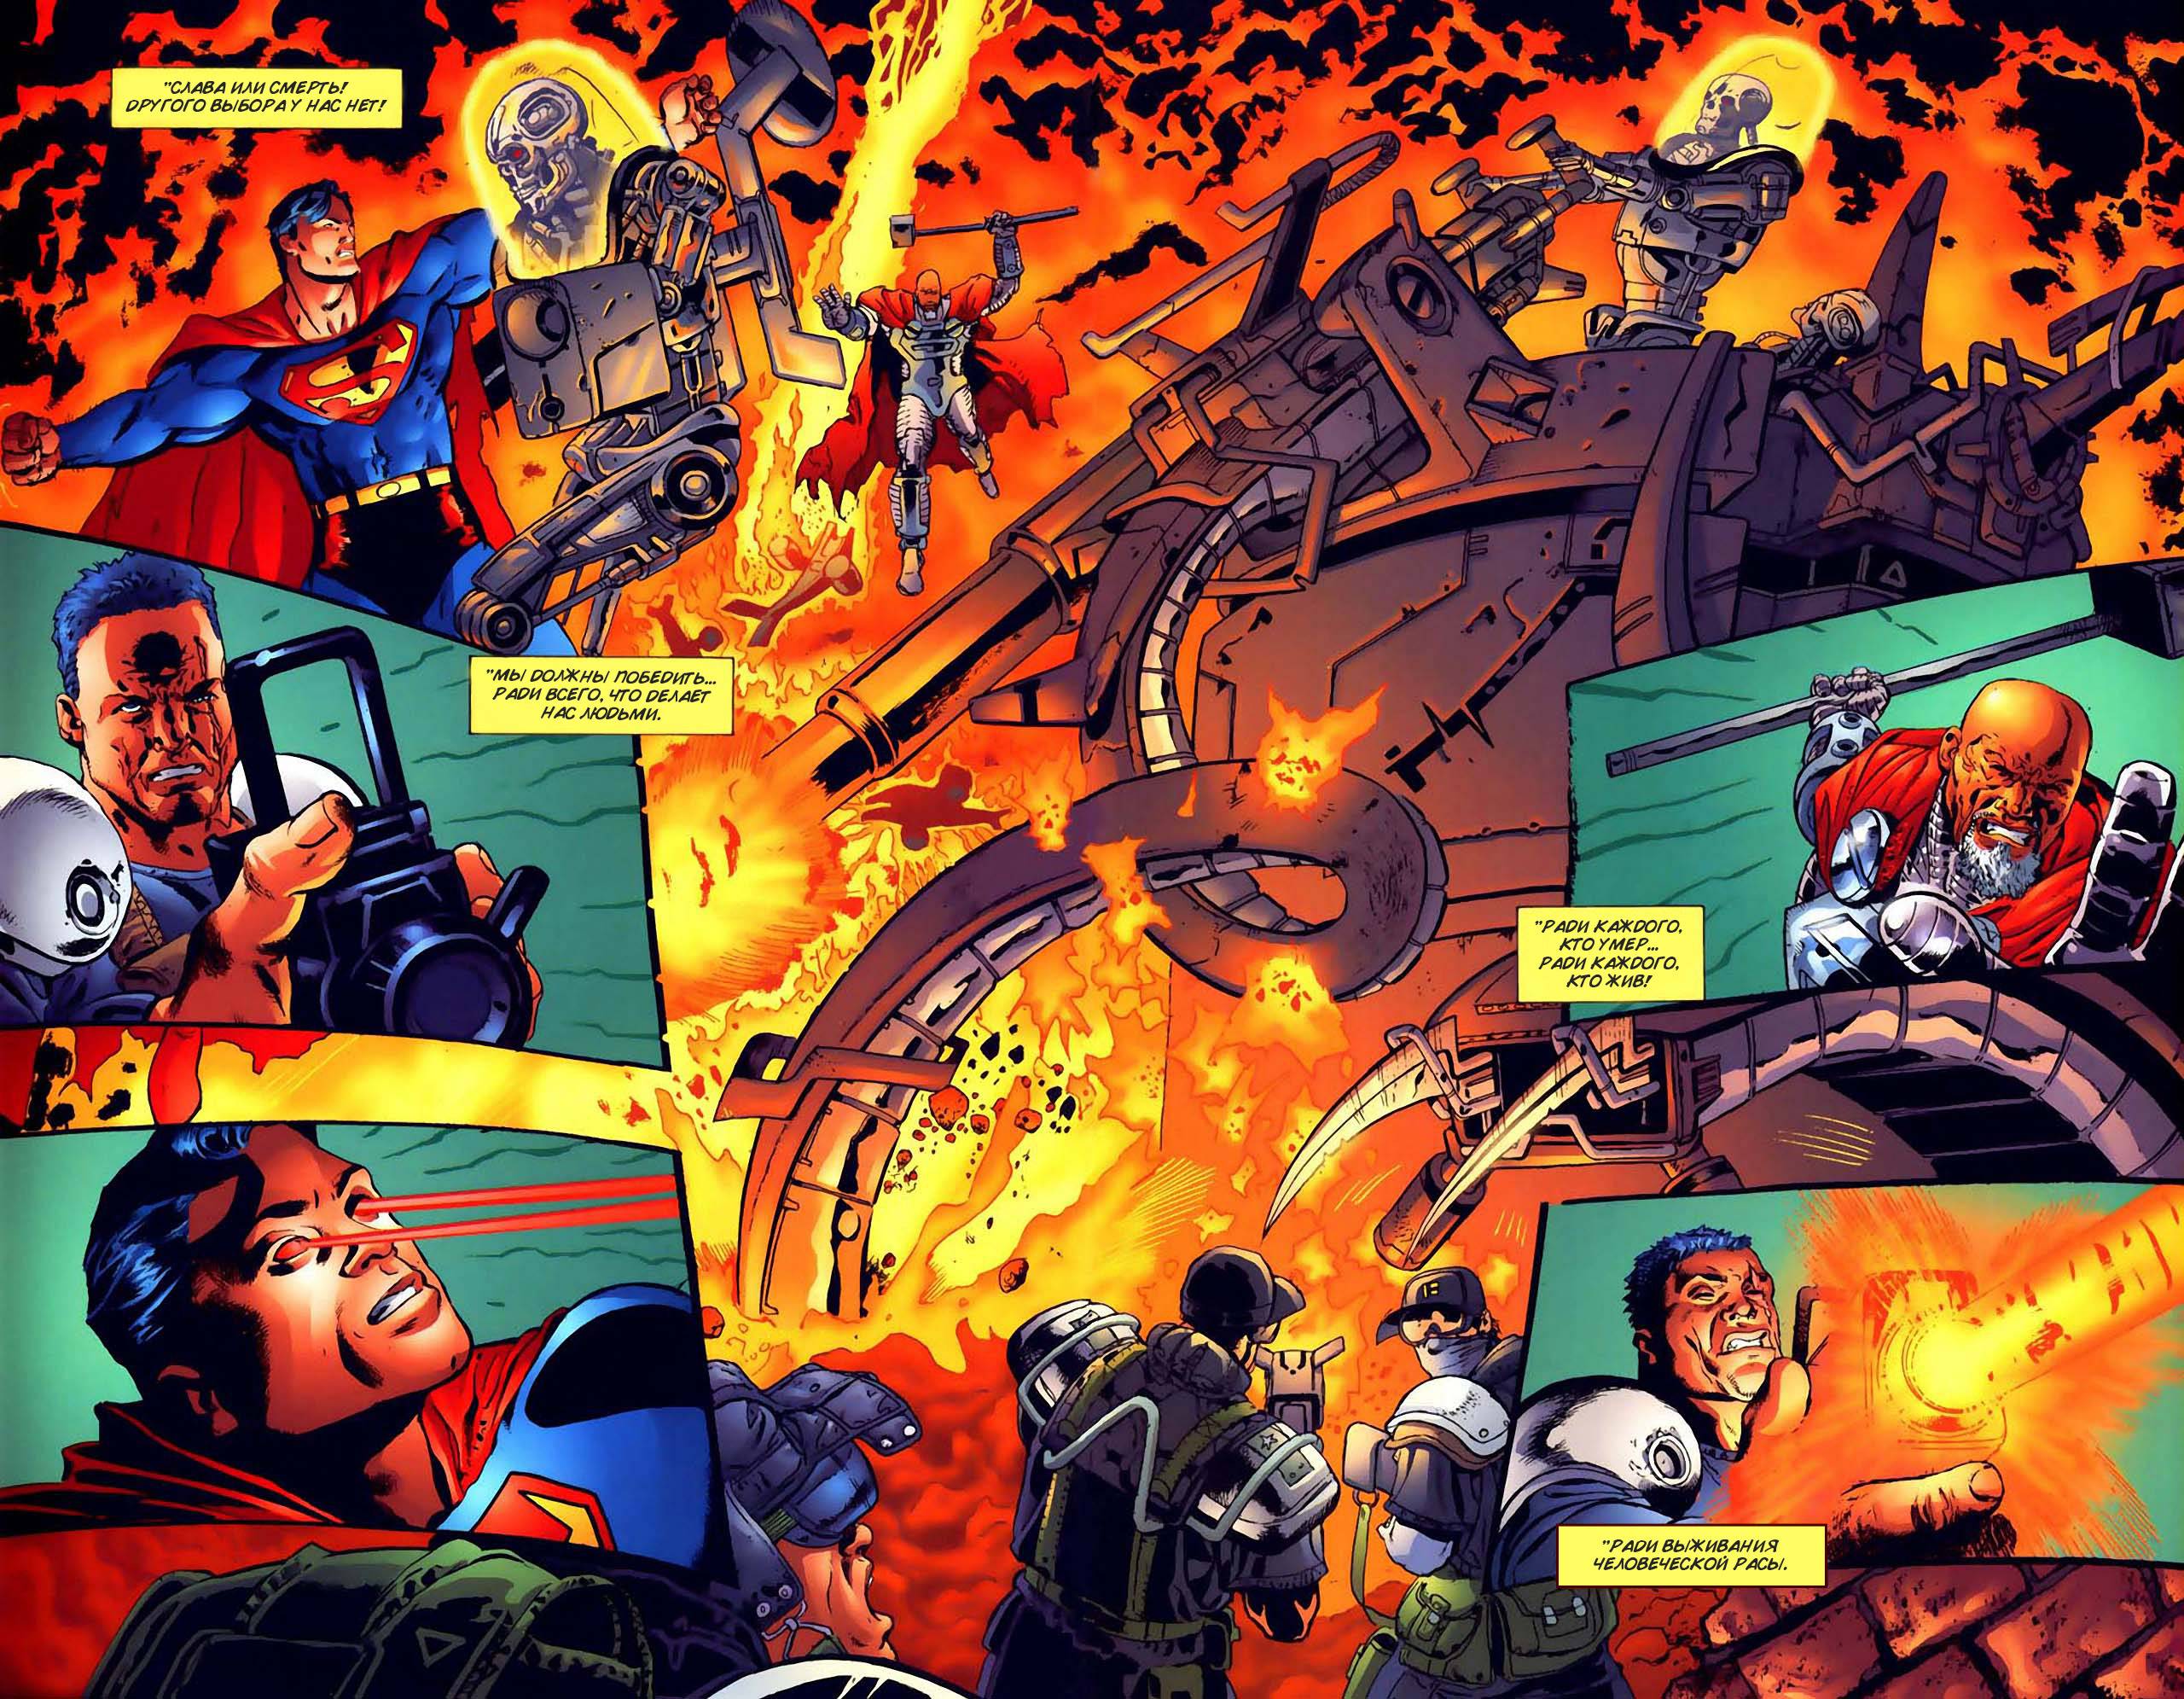 Супермен Против Терминатора: Смерть из Будущего №3 онлайн